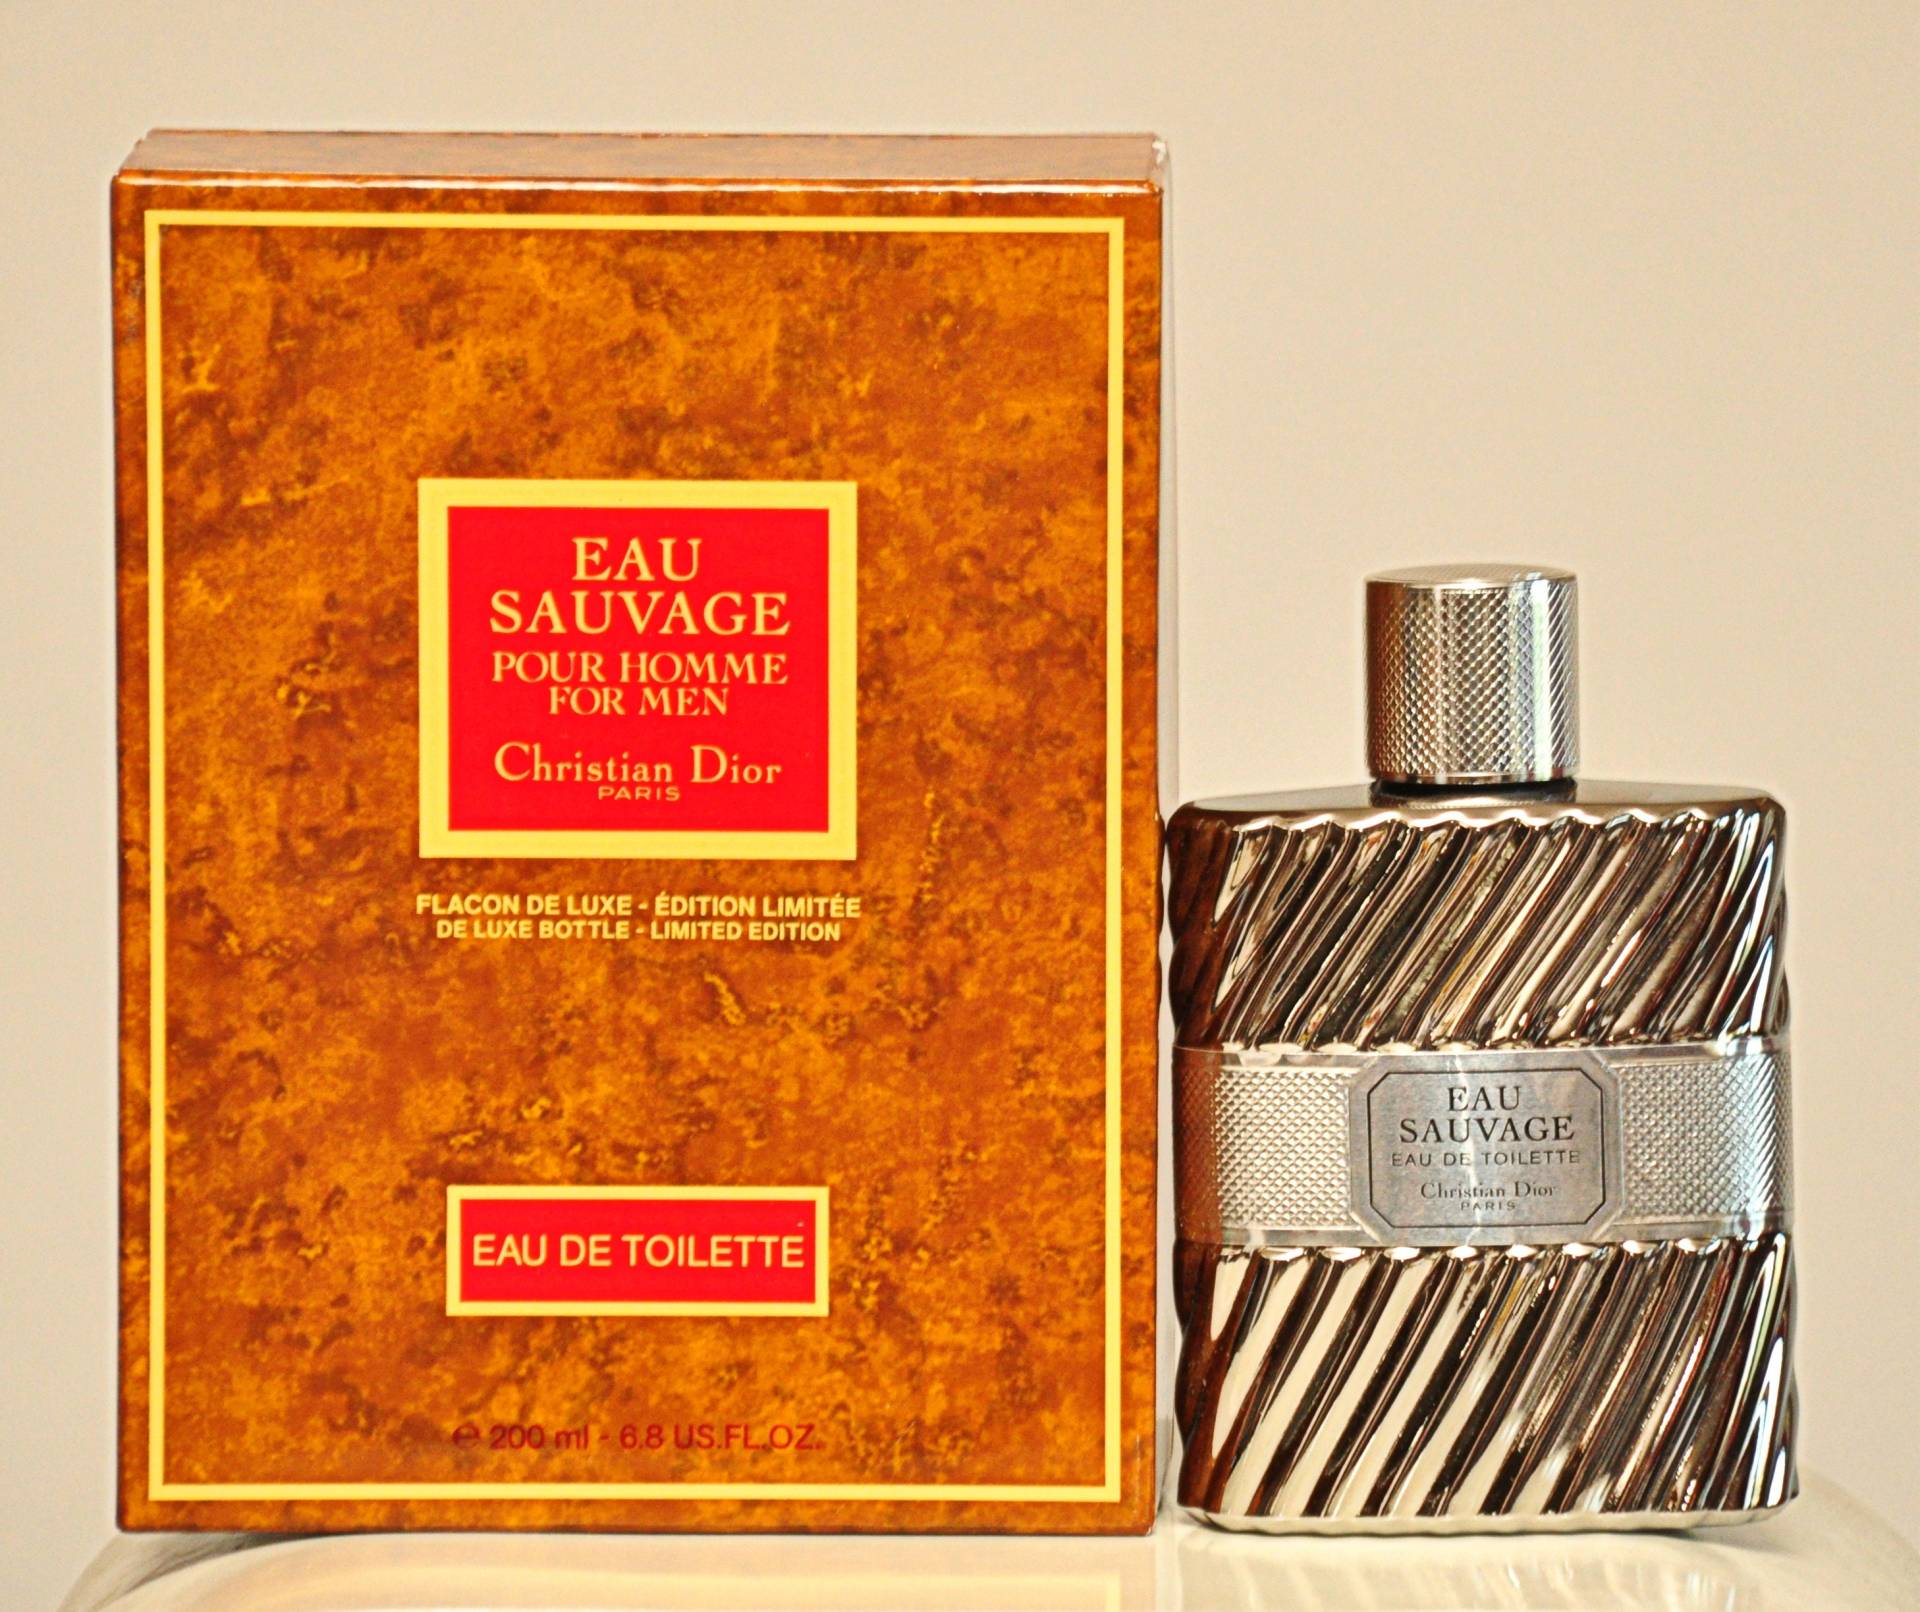 Christian Dior Eau Sauvage Flacon De Luxe Édition Limitée De Toilette Splash 200Ml Perfume Man Very Rare Vintage 1966 Version 1992 von YourVintagePerfume